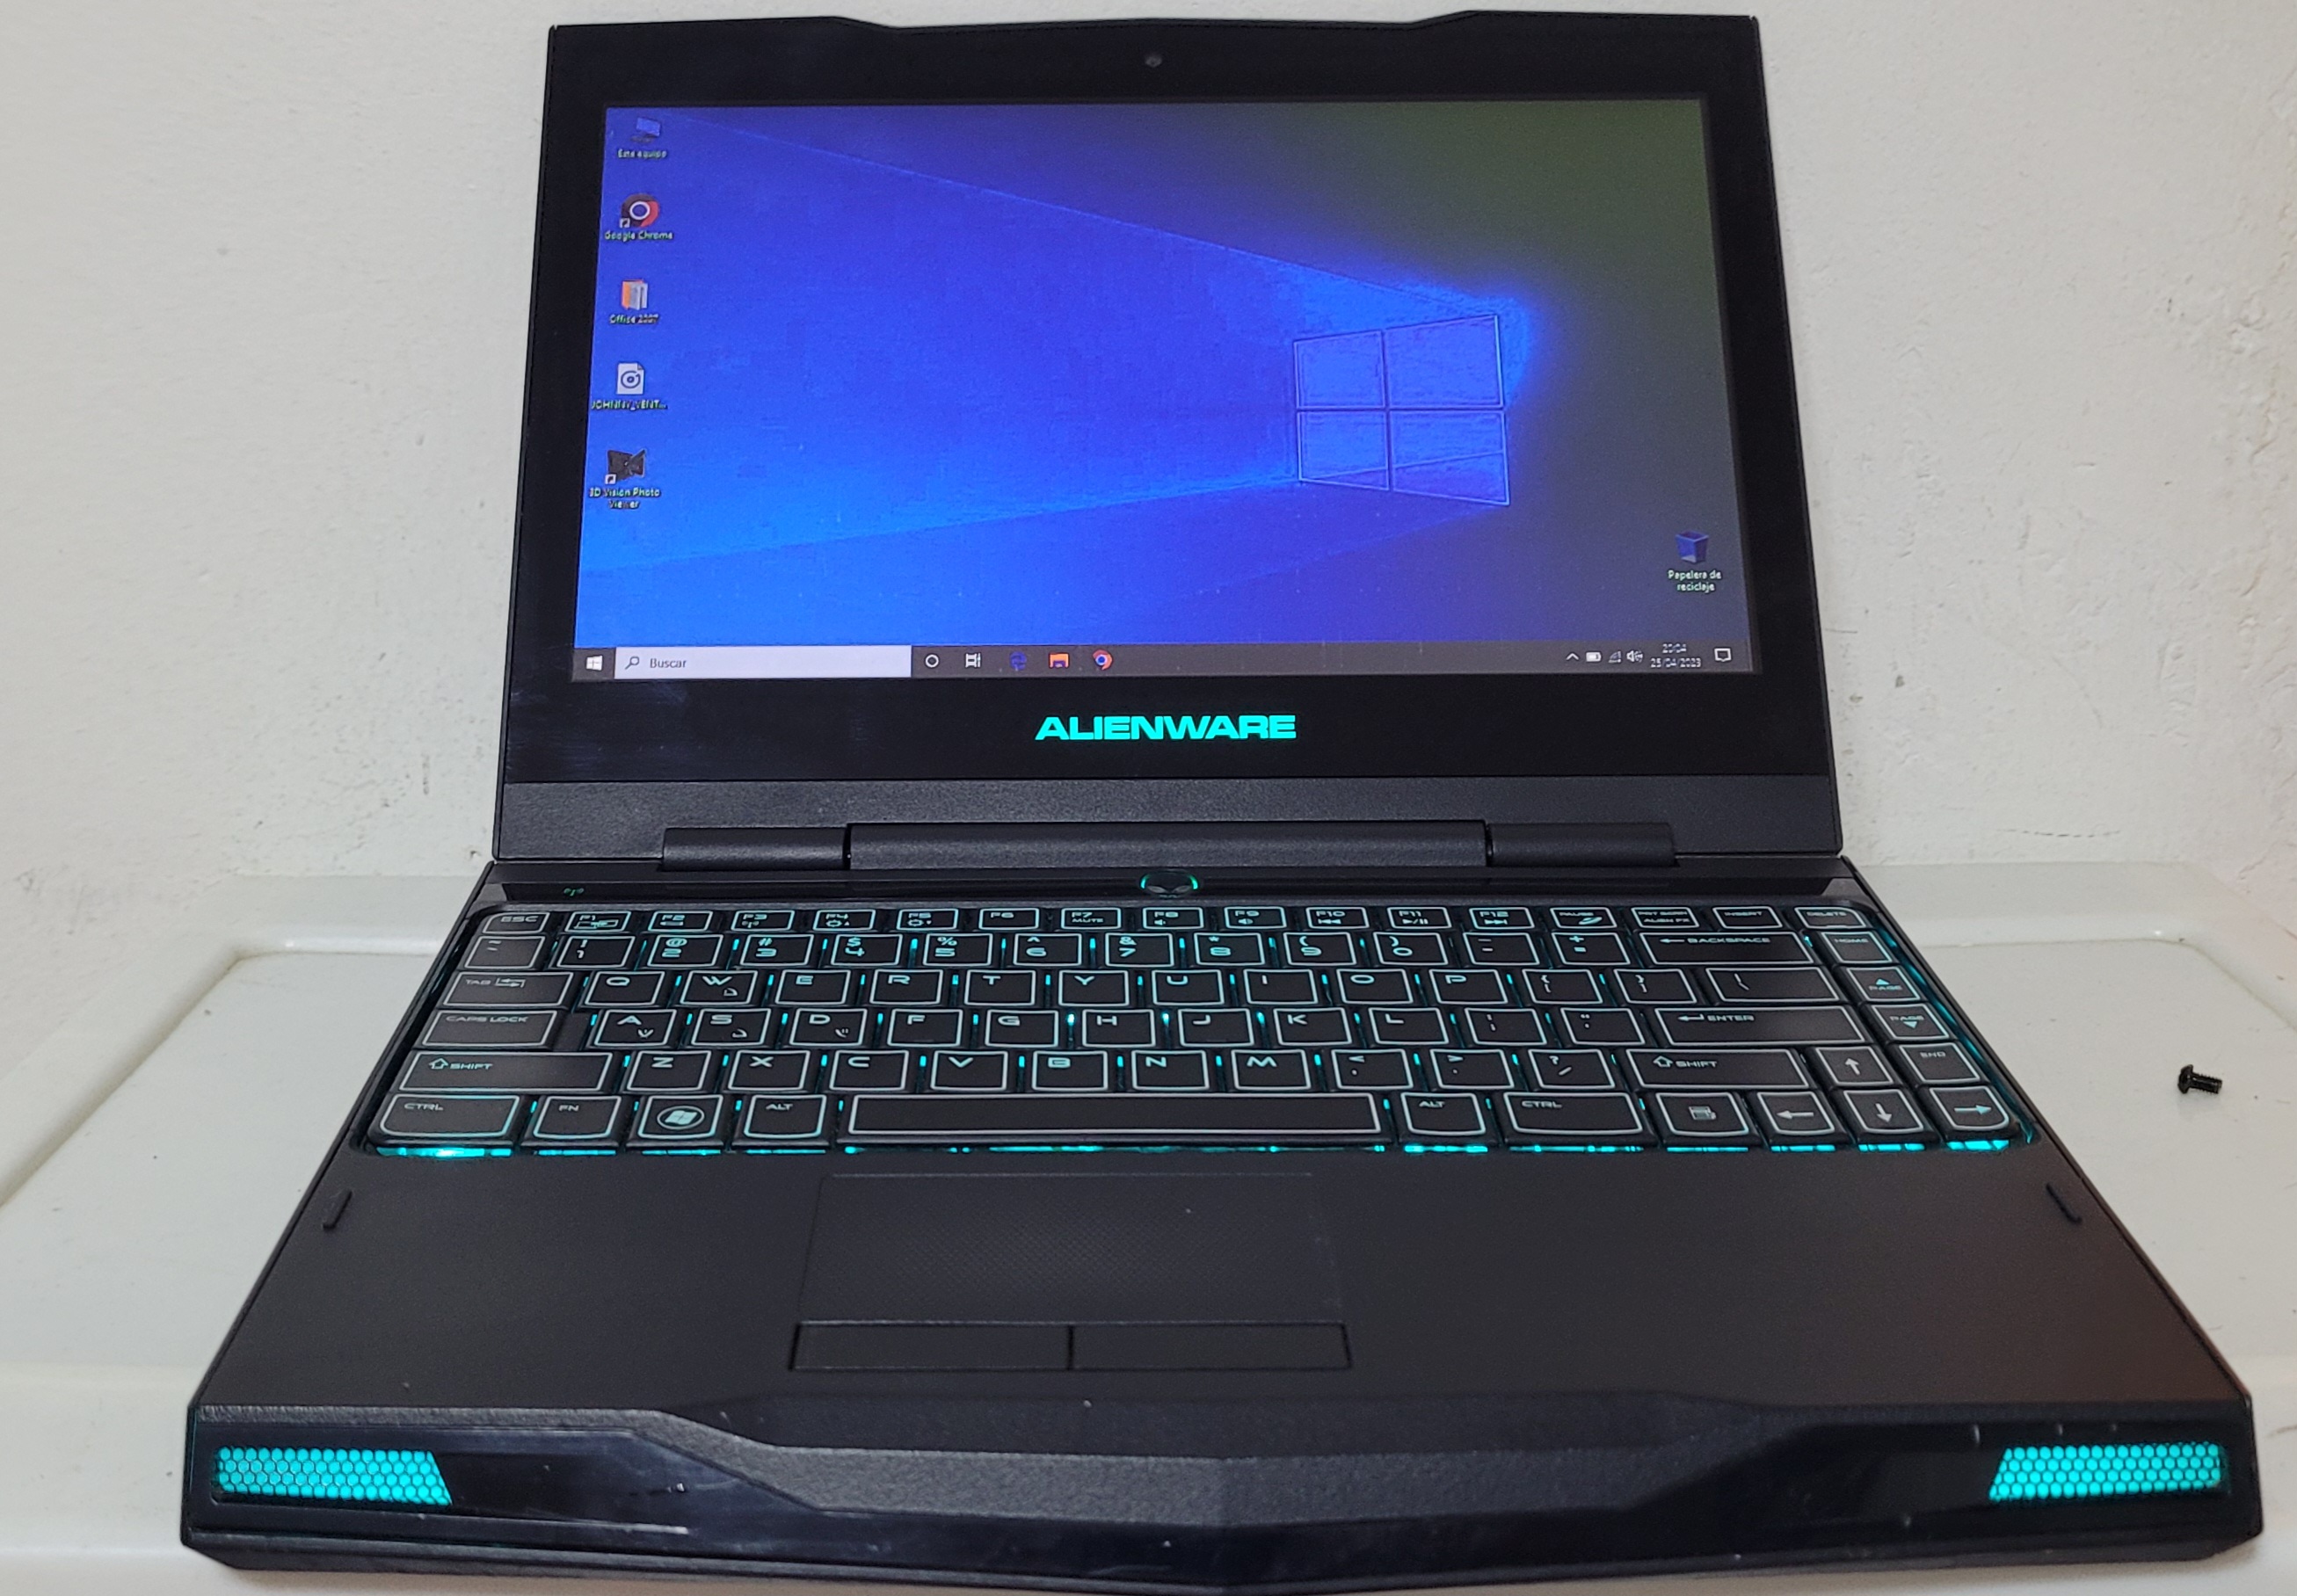 computadoras y laptops - AlienWare Gaming 13 Pulg Core i7 Ram 8gb Disco 128gb SSD Nvidea Gt 335 4gb 0